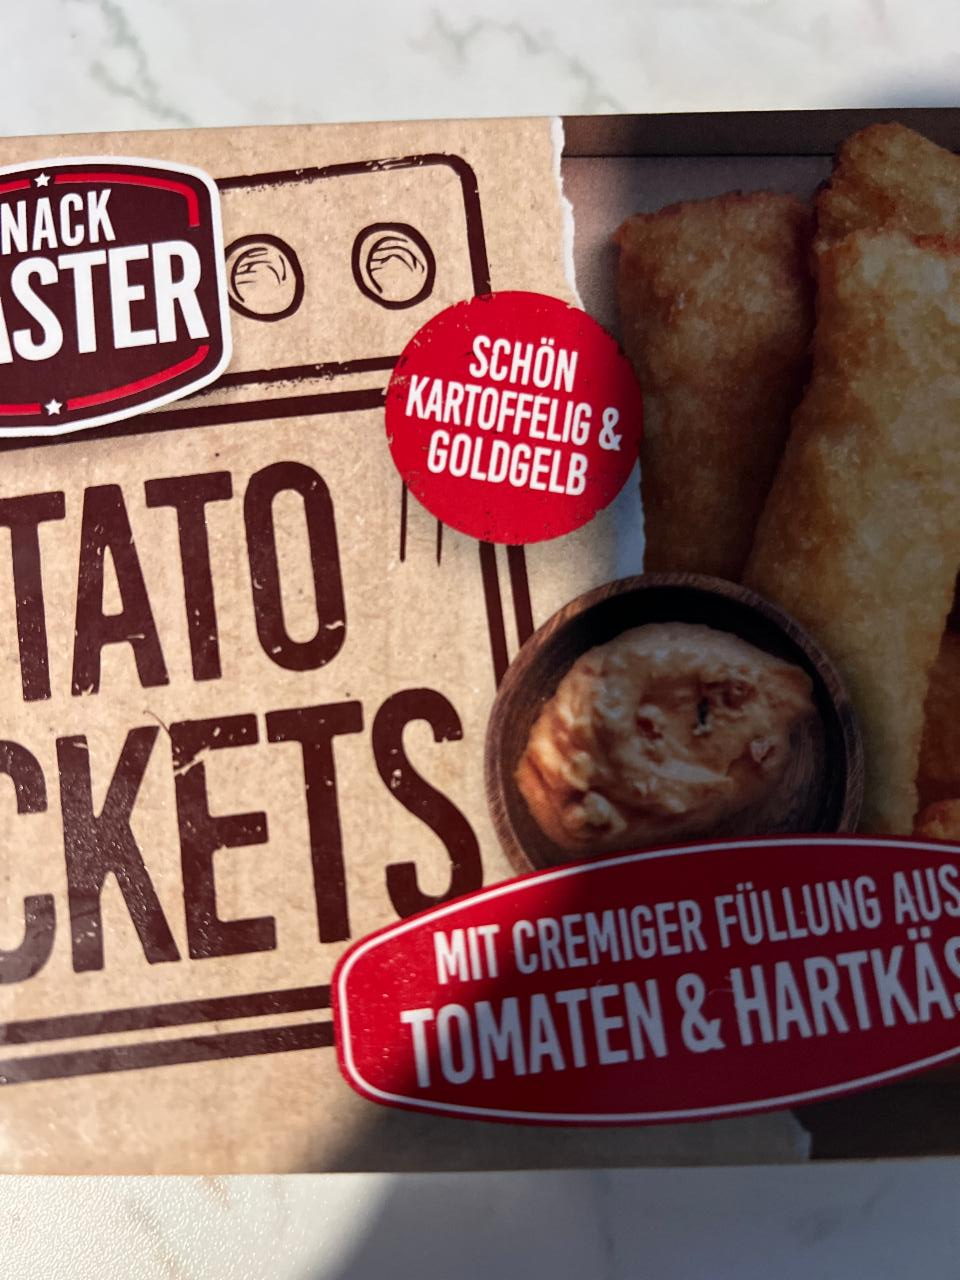 Fotografie - Potato Pockets mit cremiger Füllung aus Tomaten & Hartkäse Snack Master